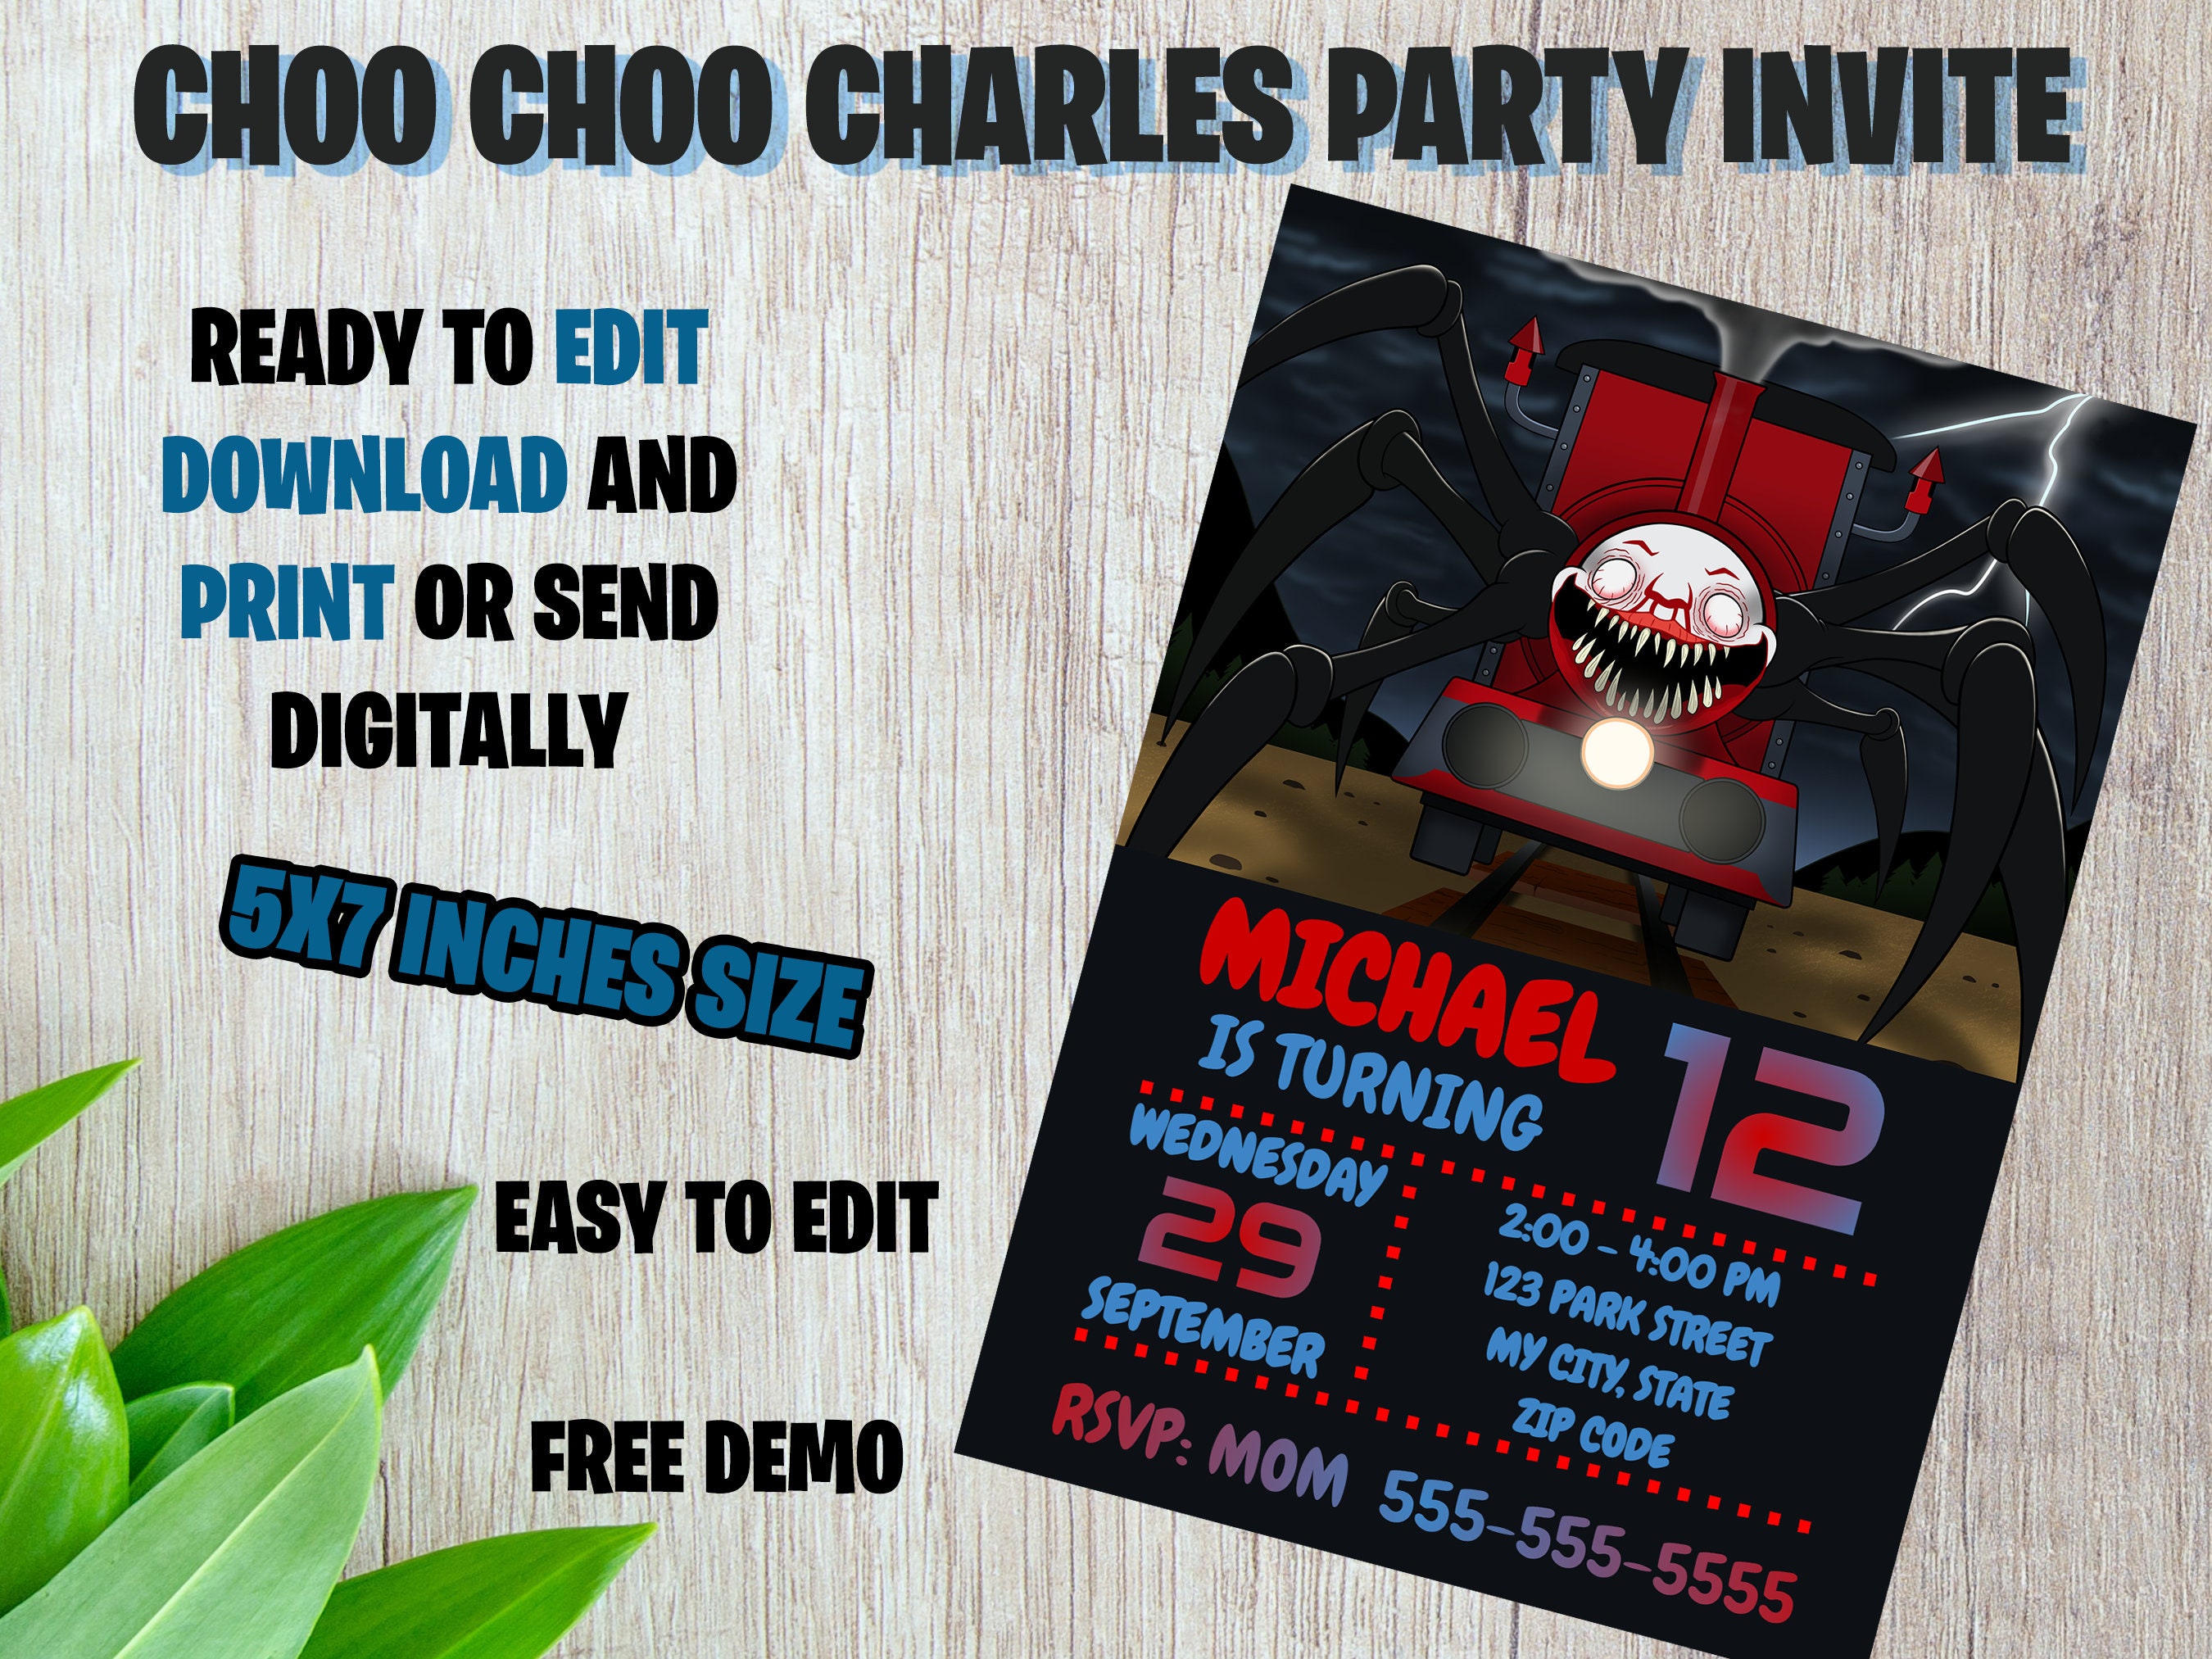 Choo-Choo Charles Free Download 